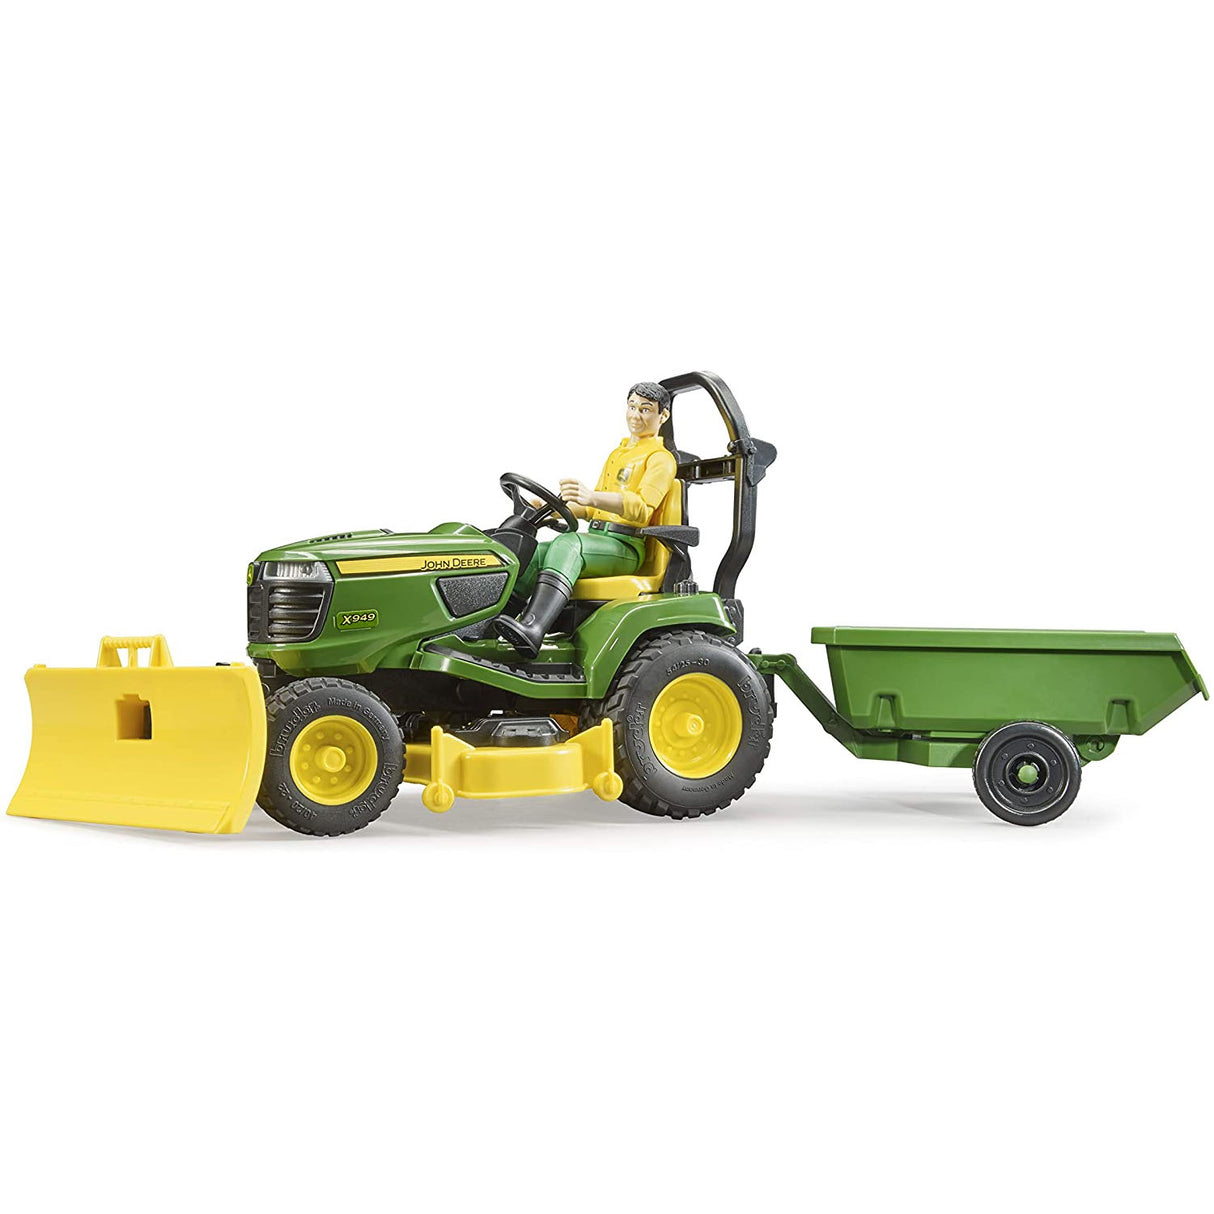 Gardener & Lawn Tractor